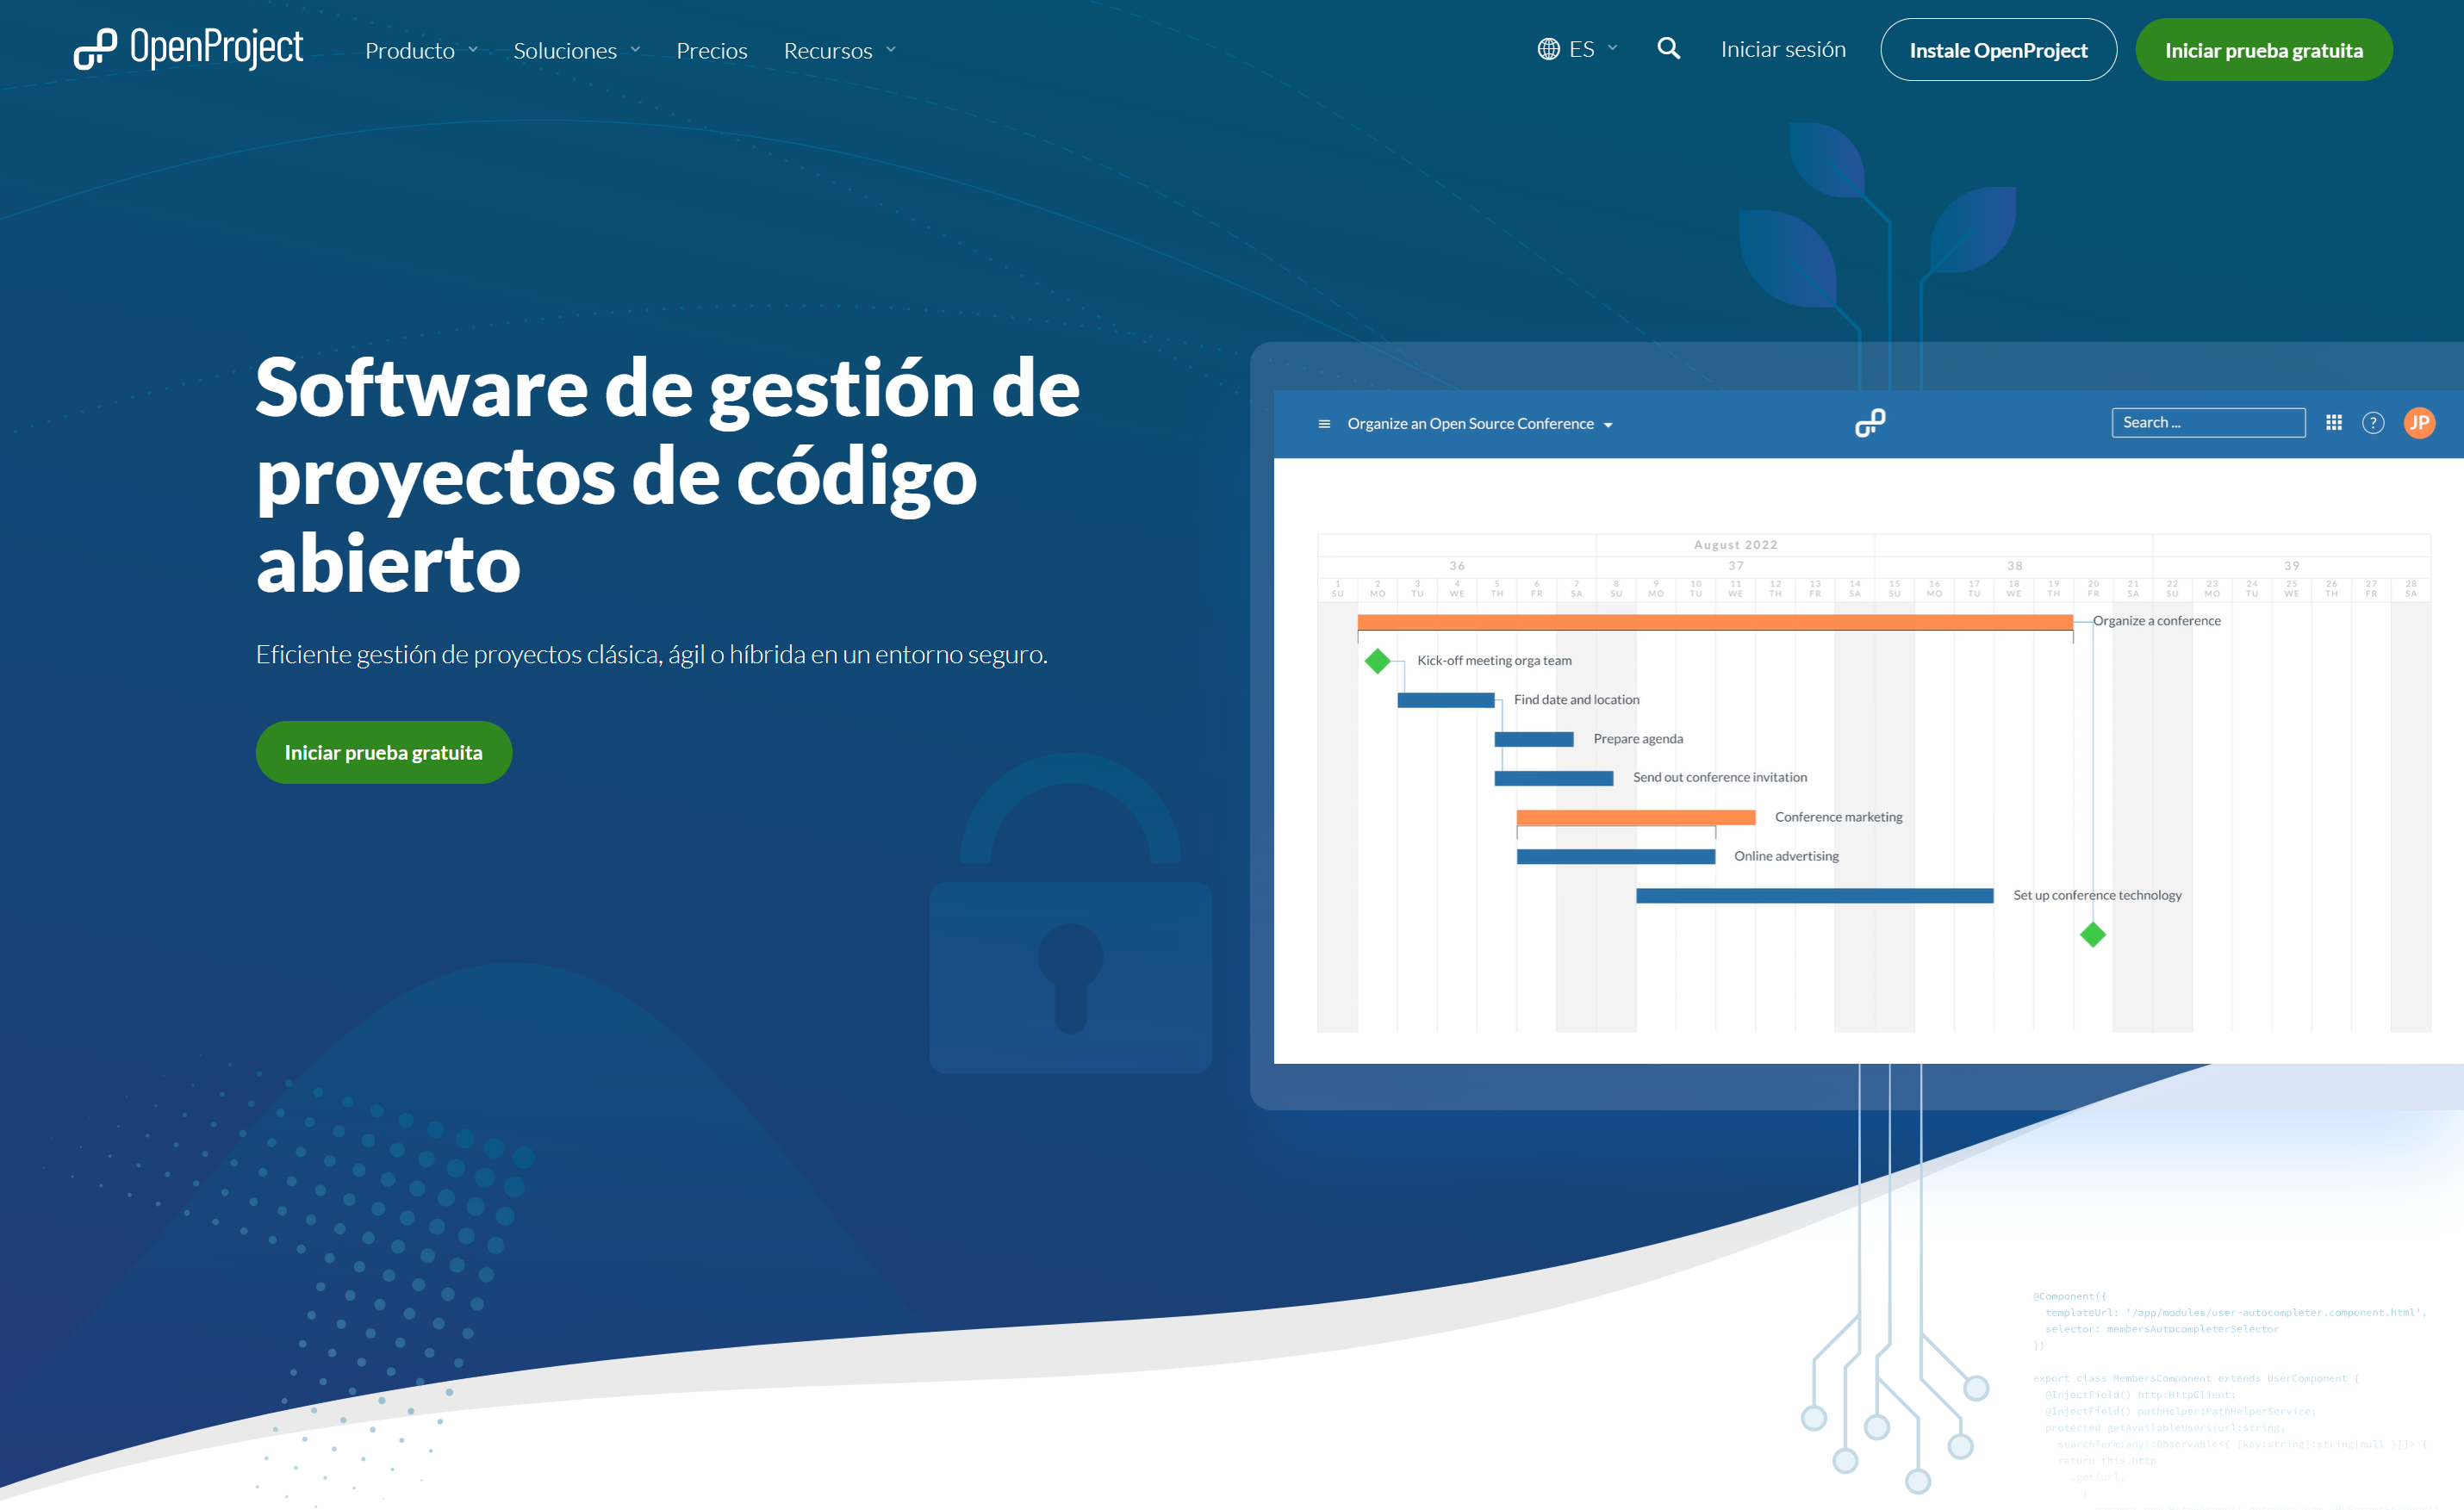 Screenshot OpenProject Spanish website